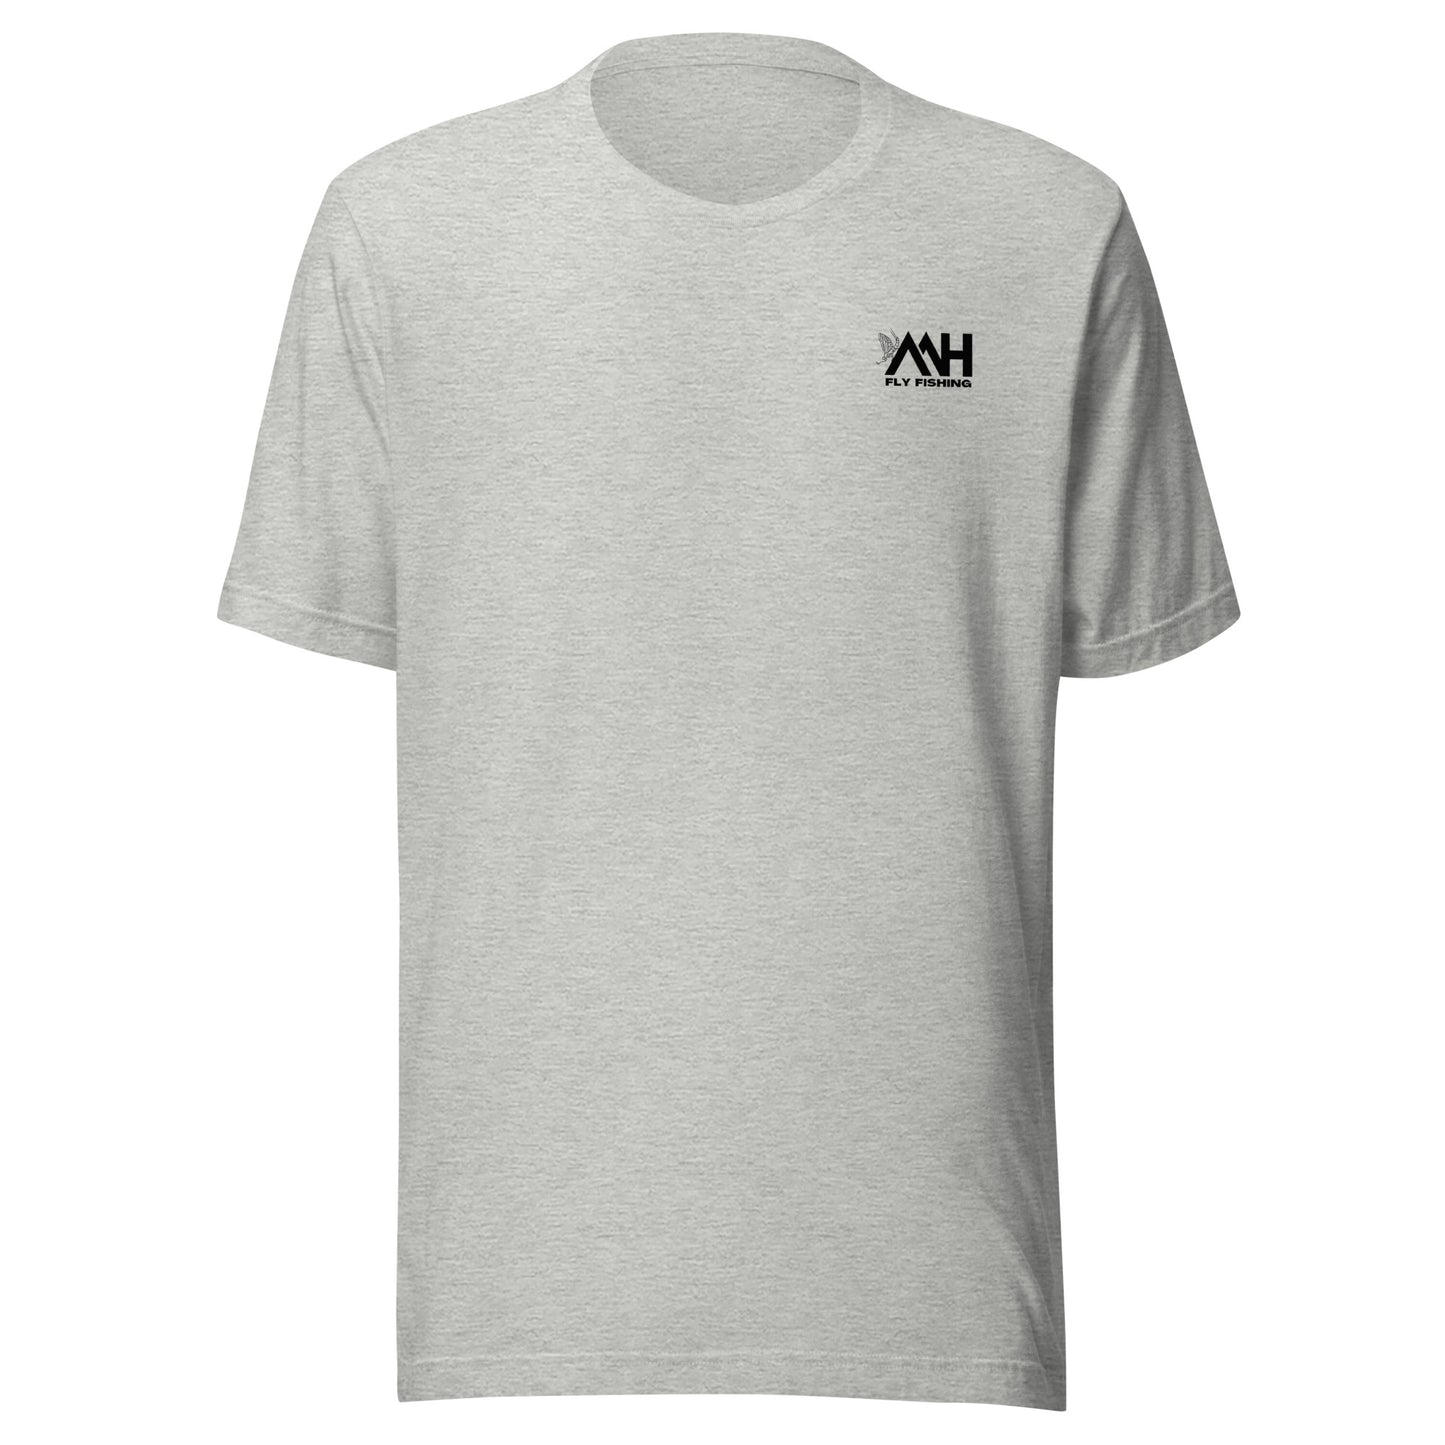 MH Trout Flies Unisex t-shirt